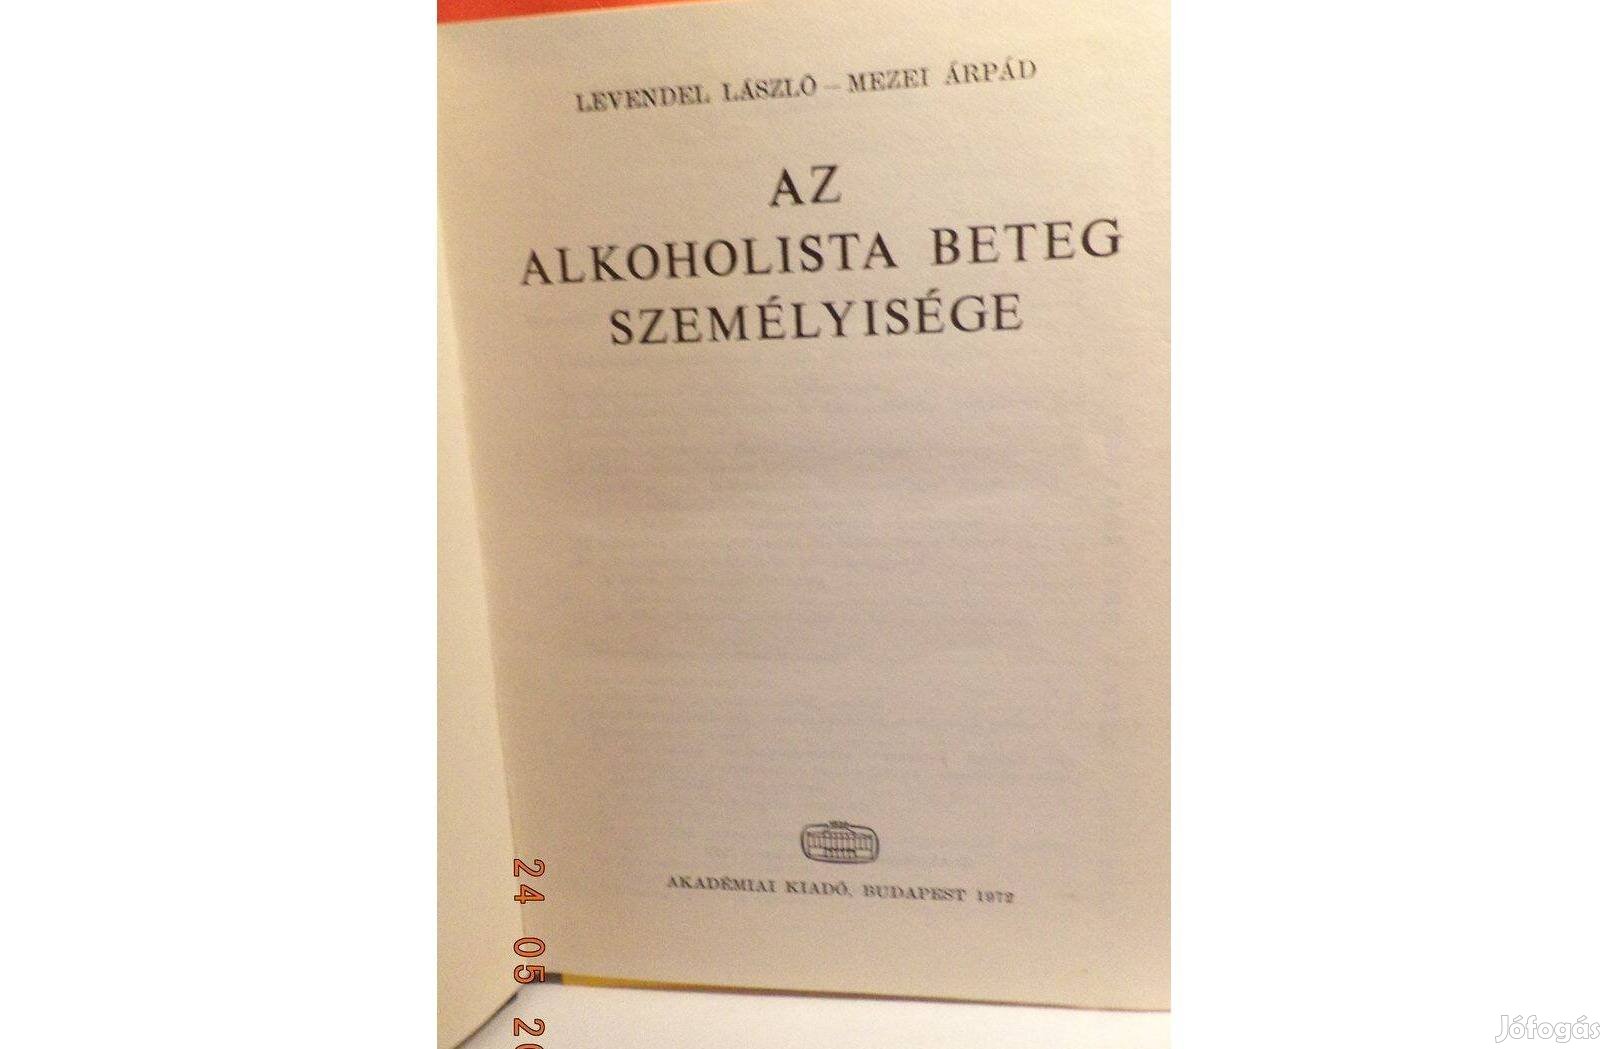 Levendel László - Mezei Árpád: Az alkoholista beteg személyisége